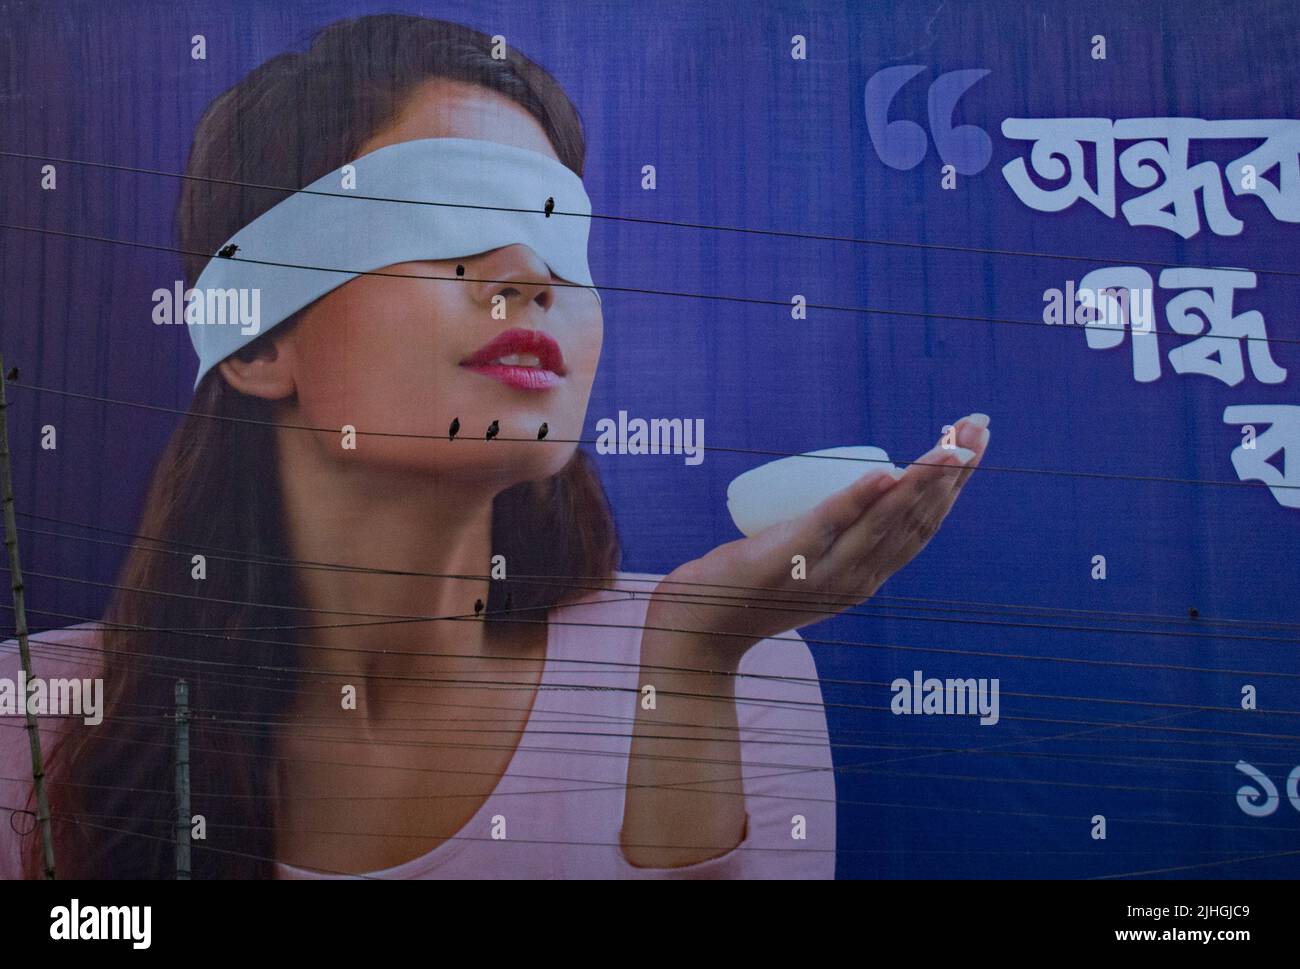 Vögel scheinen weibliche Augen auf Plakatwänden zu sein, Bogra, Bangladesch Stockfoto